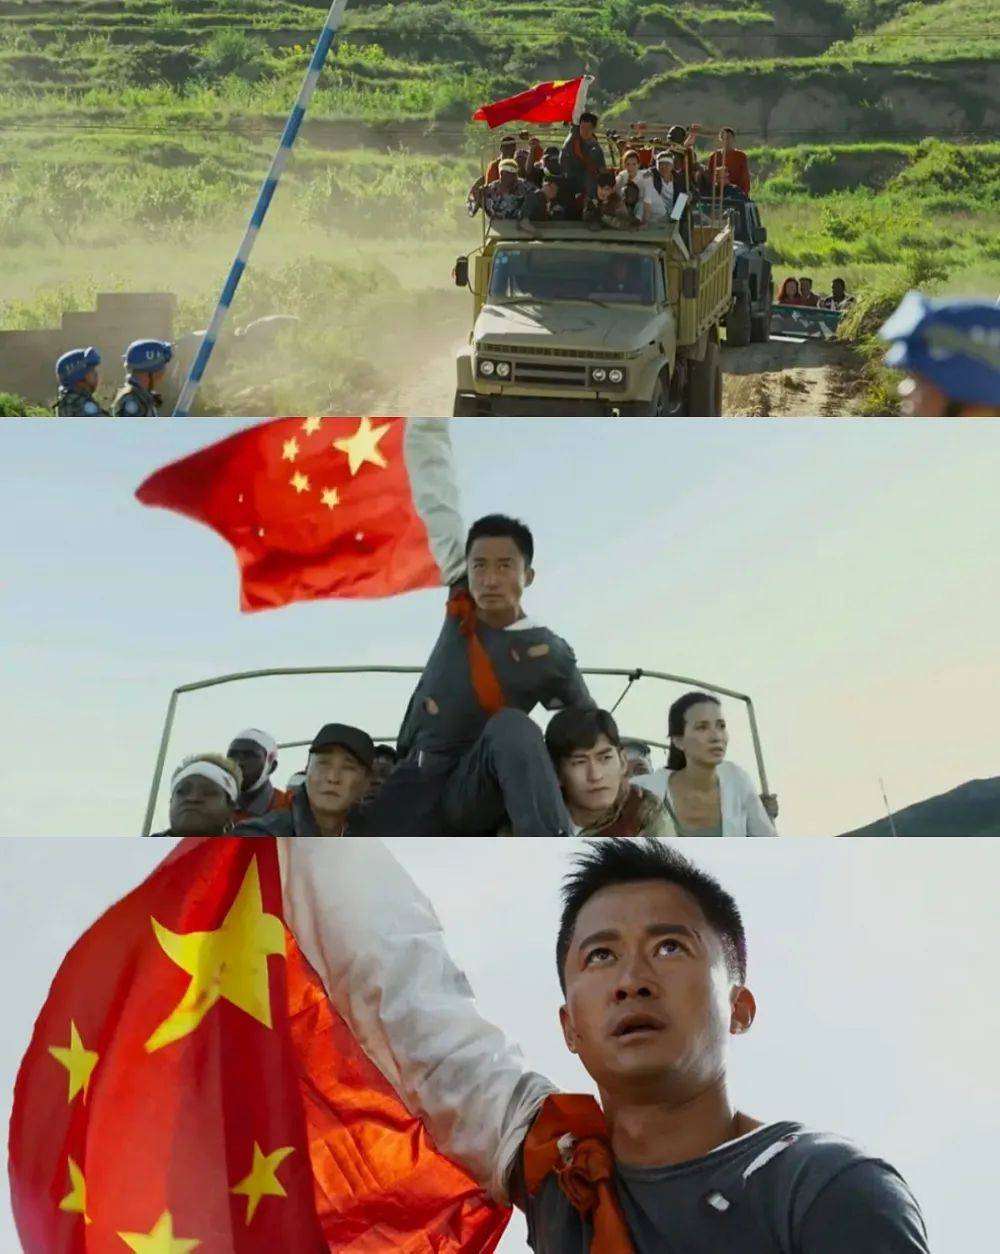 原创真"战狼2"剧情!中国小伙在约旦被劫持后,举起五星红旗退敌